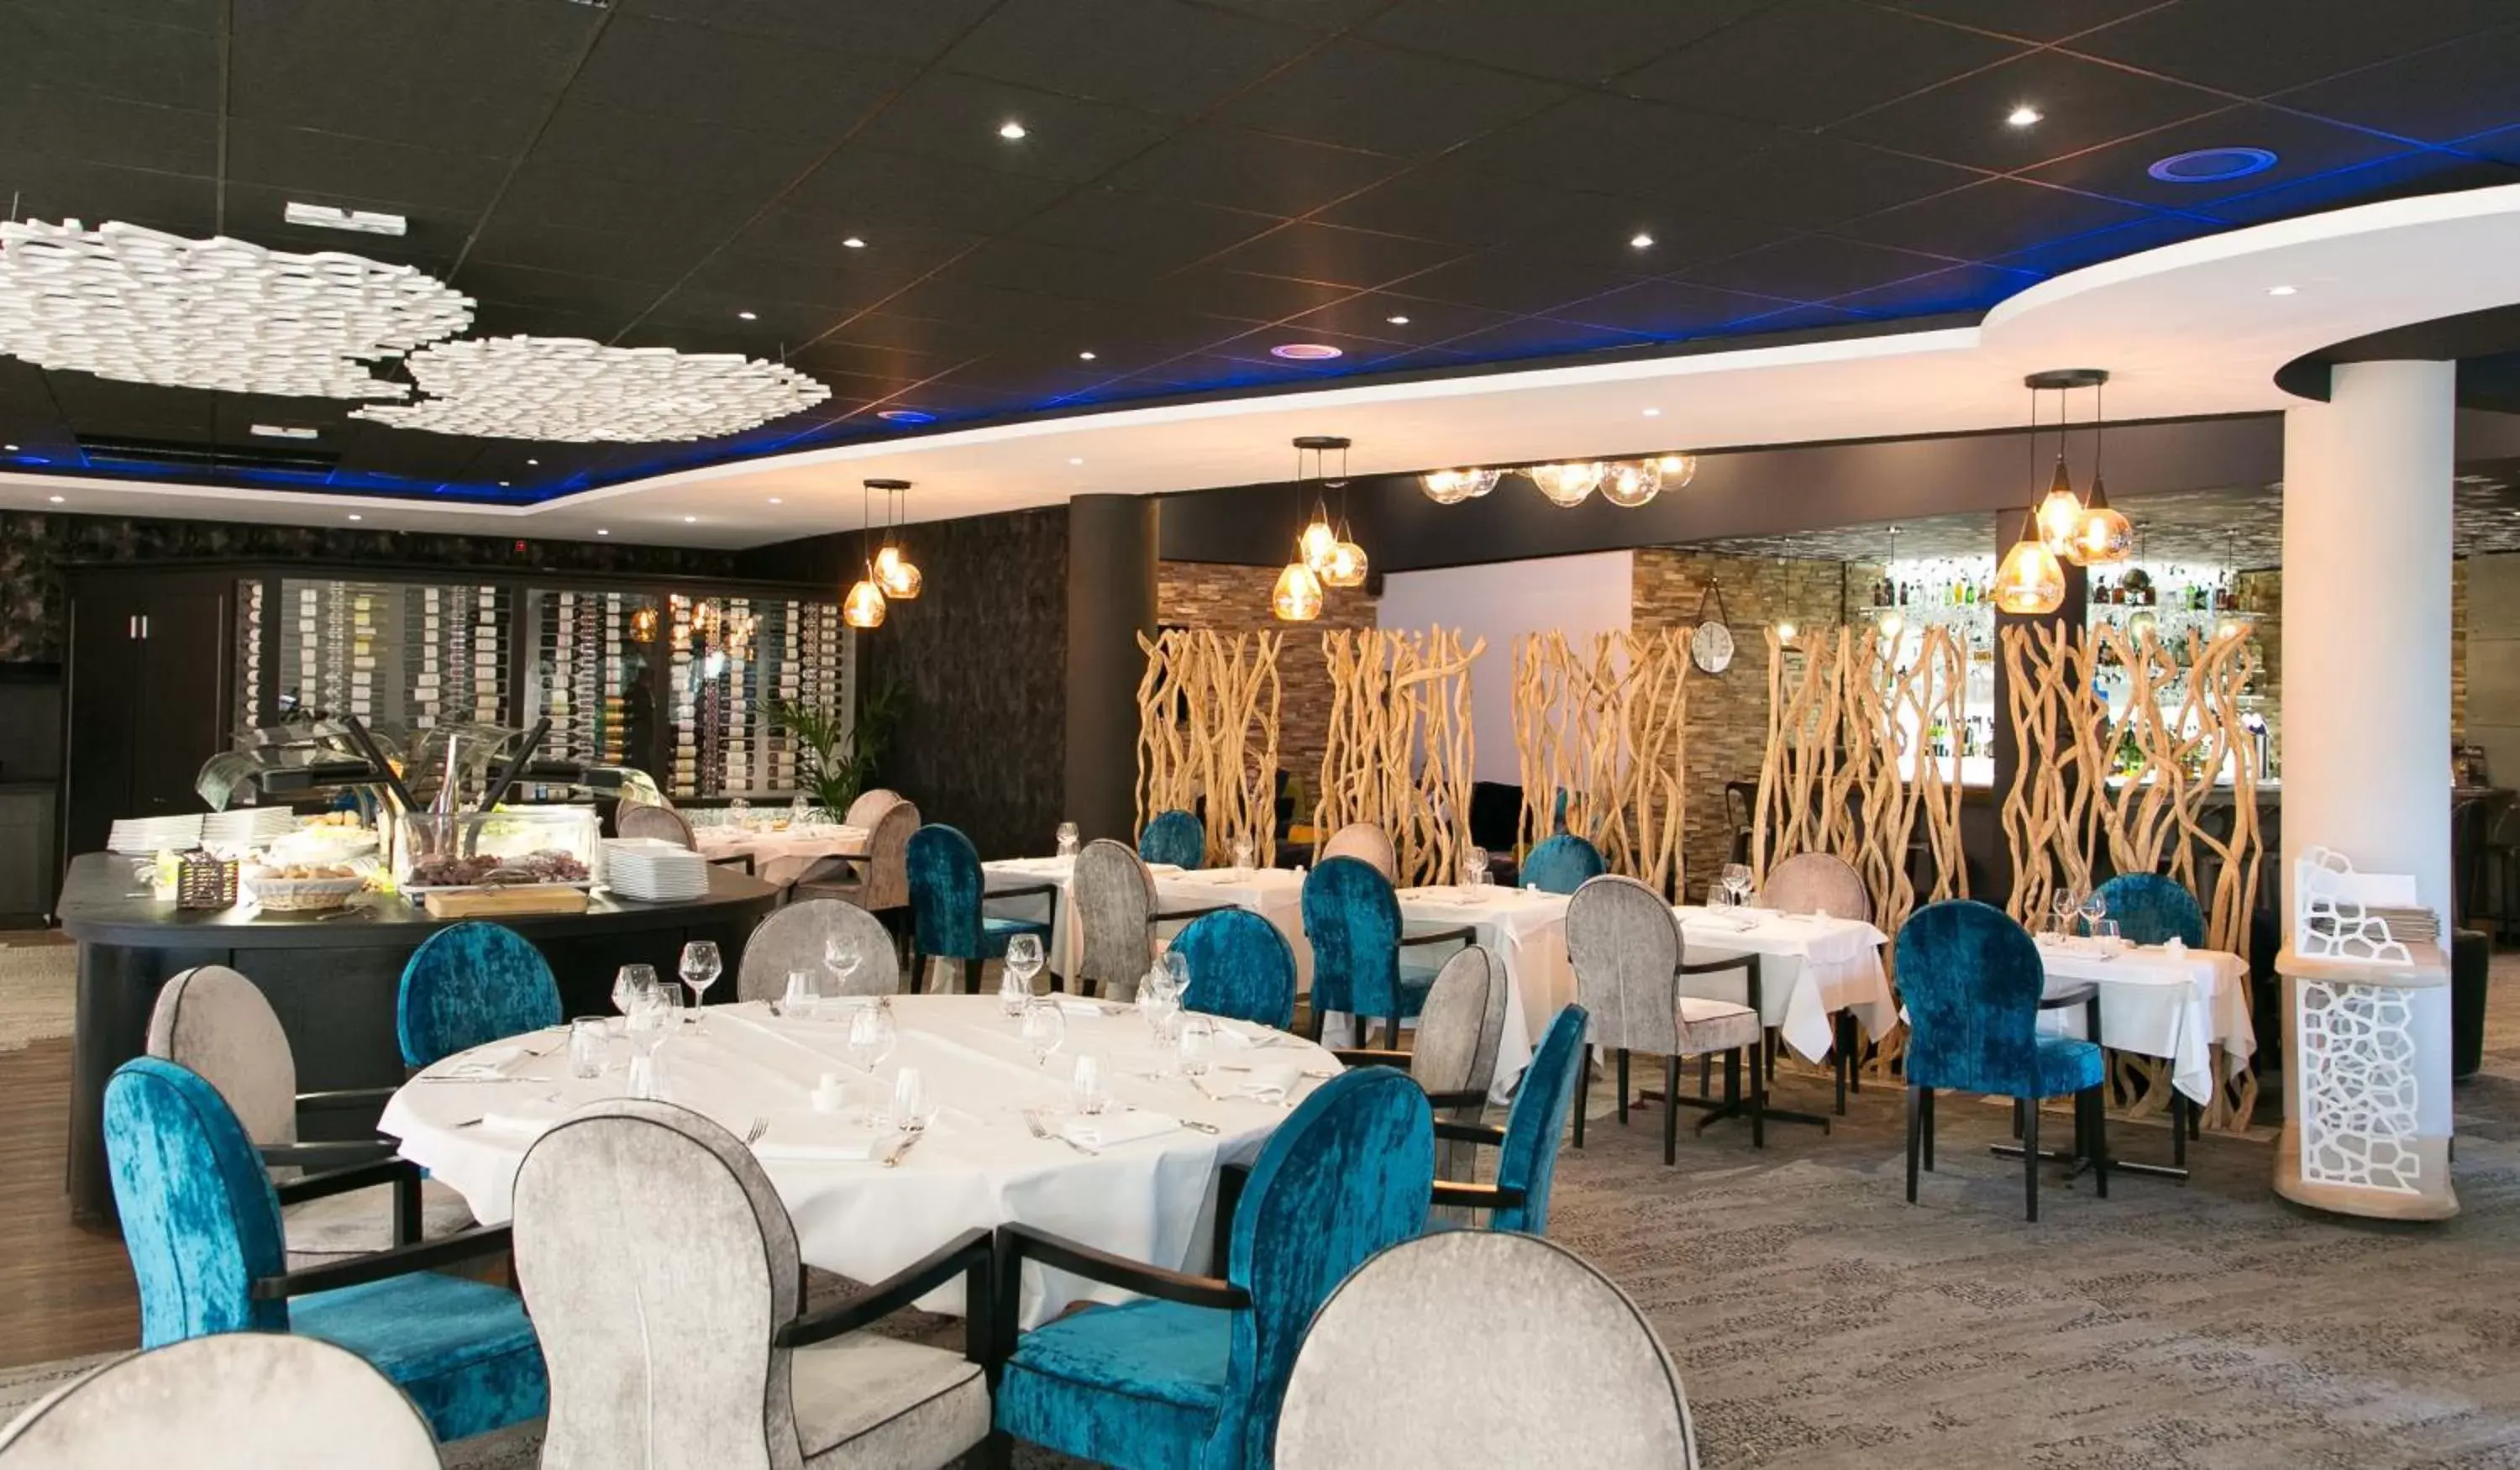 Restaurant/places to eat, Banquet Facilities in Mercure Bordeaux Aéroport